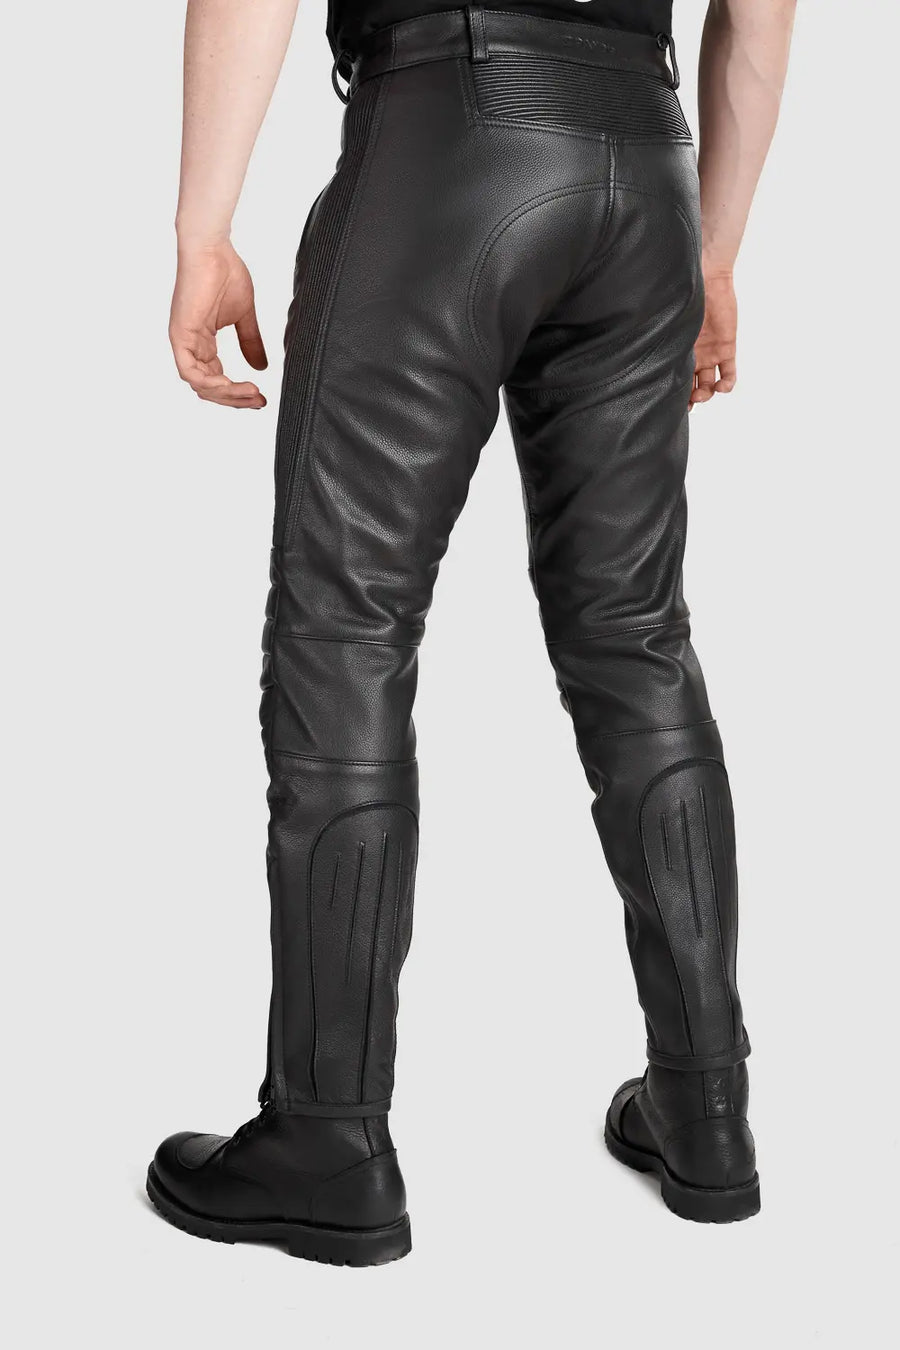 KATANA - Pantalon moto cuir